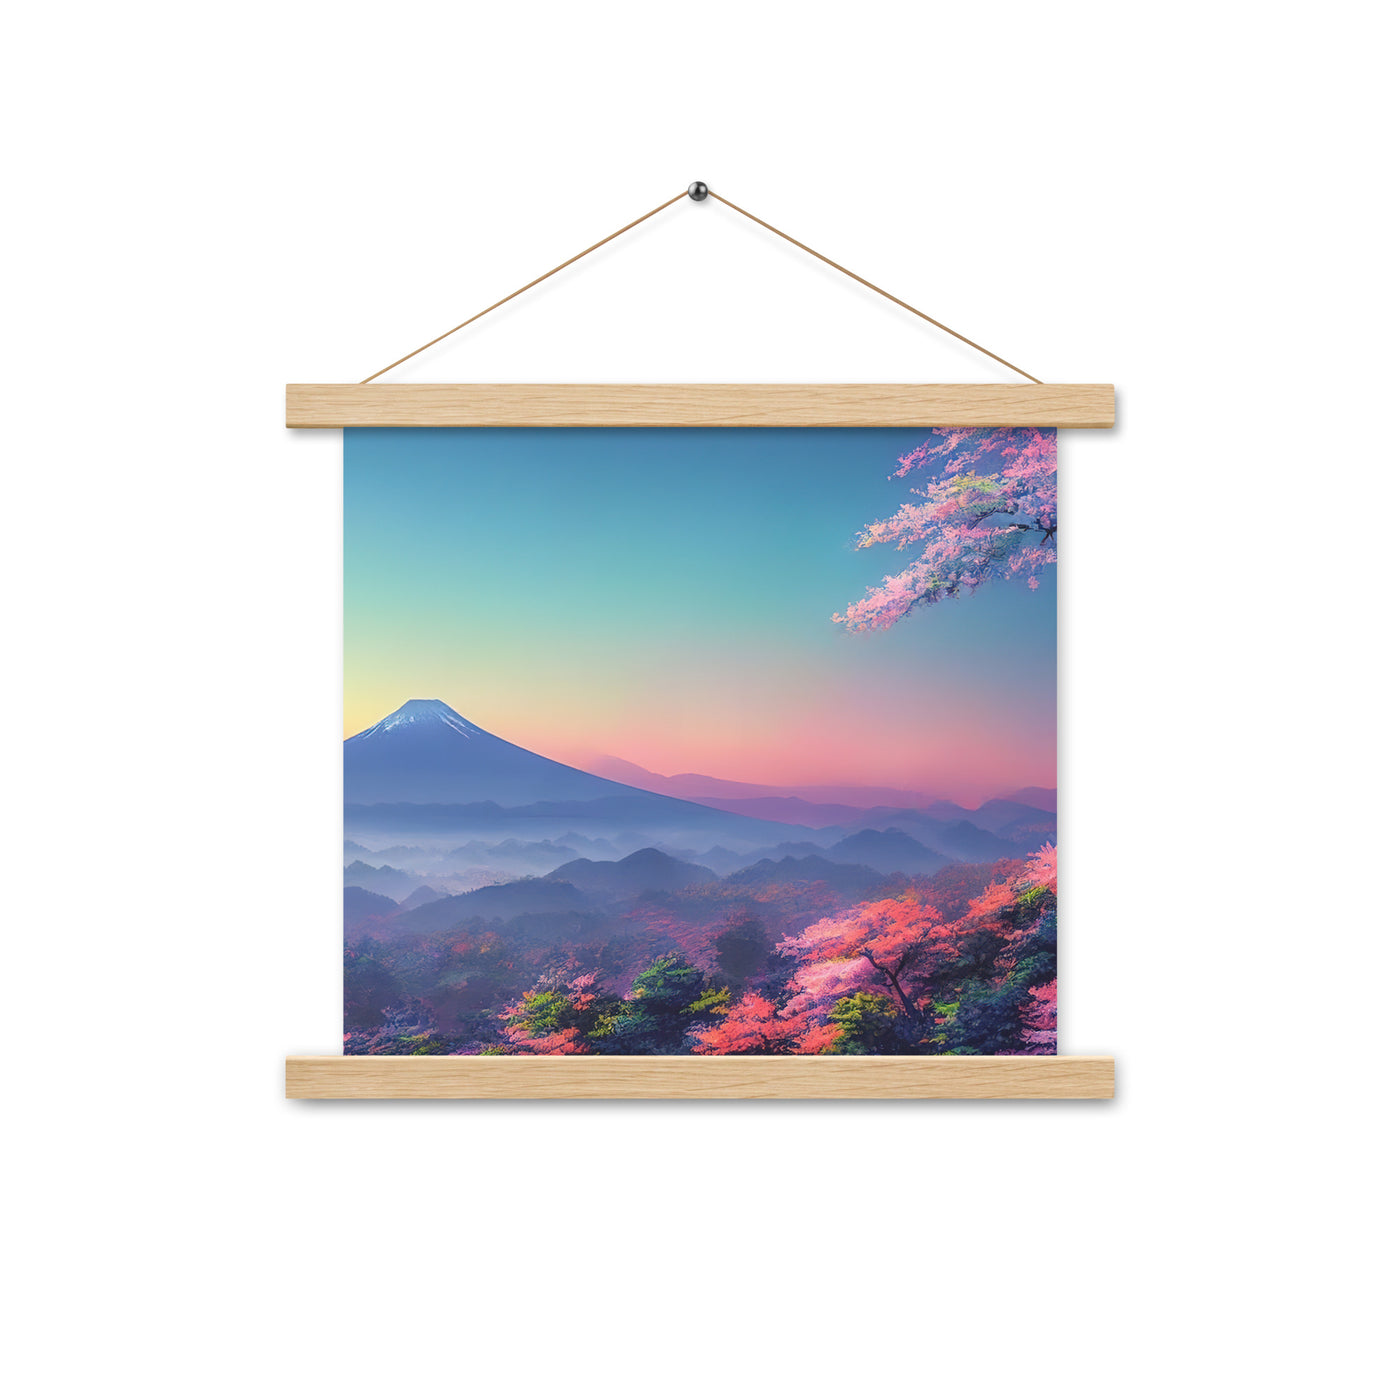 Berg und Wald mit pinken Bäumen - Landschaftsmalerei - Premium Poster mit Aufhängung berge xxx Oak 35.6 x 35.6 cm